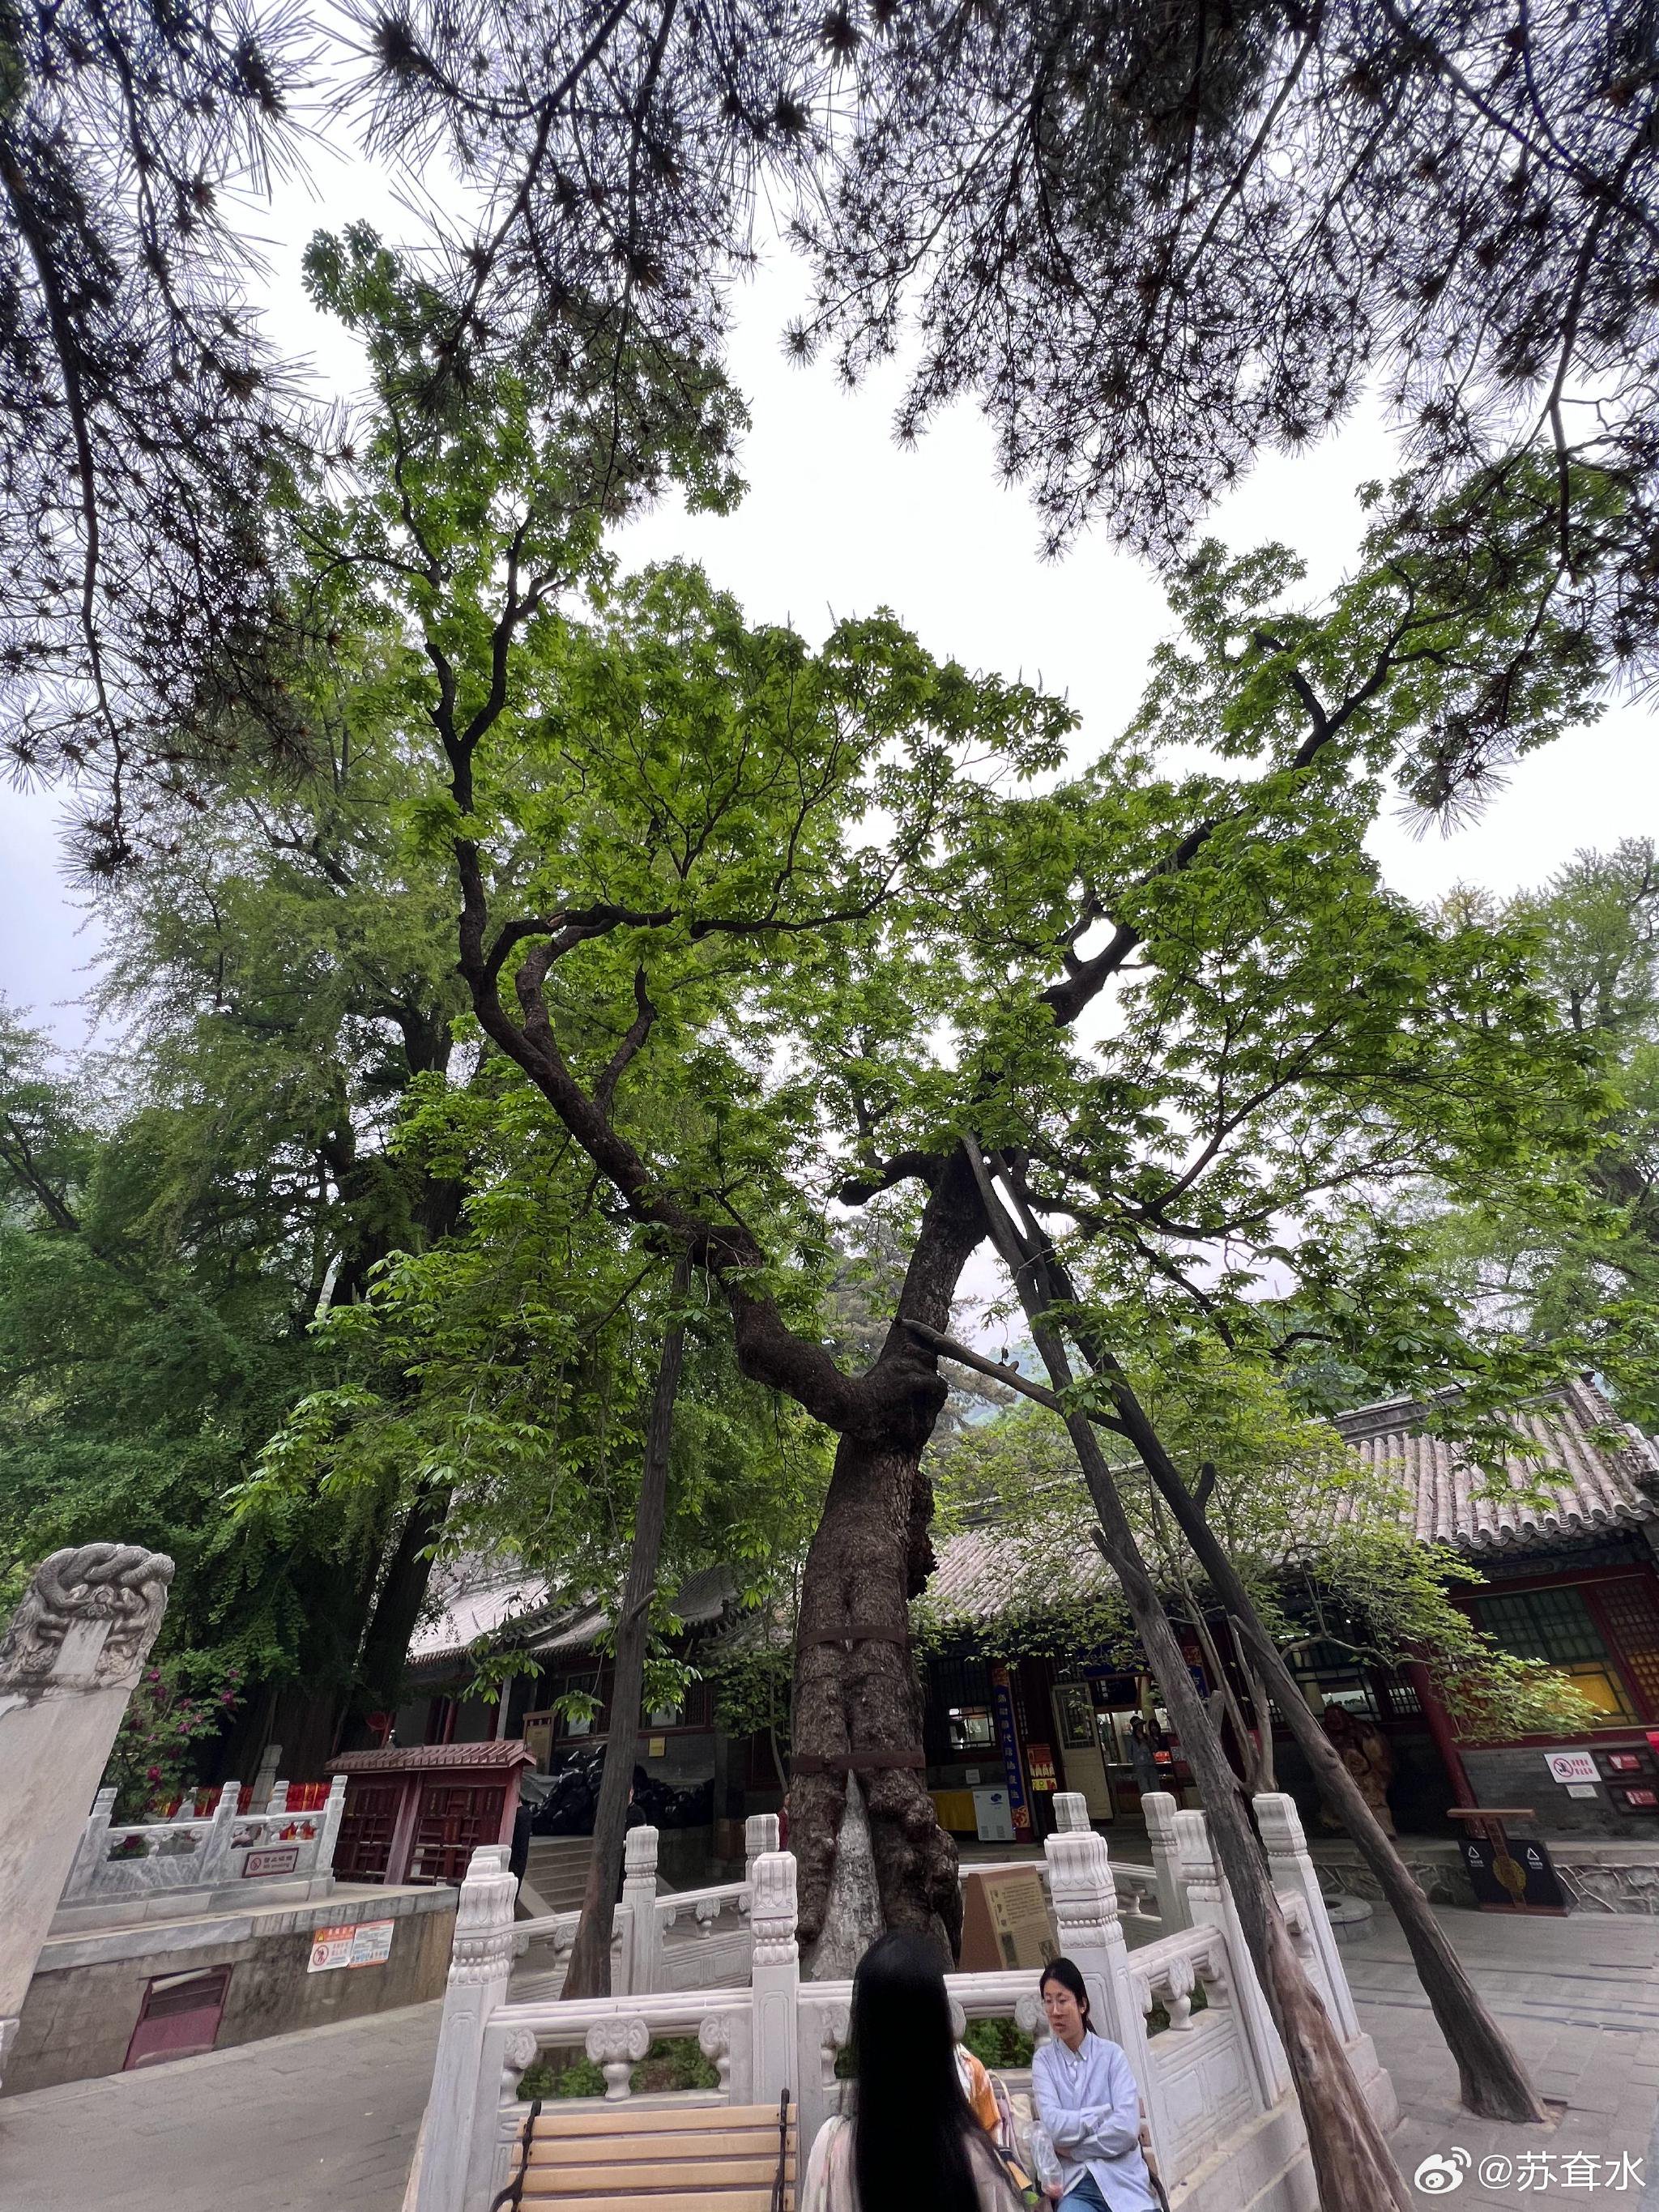 注意看，这是潭柘寺的婆罗树，也就是我们常说的菩提树，也叫七叶树